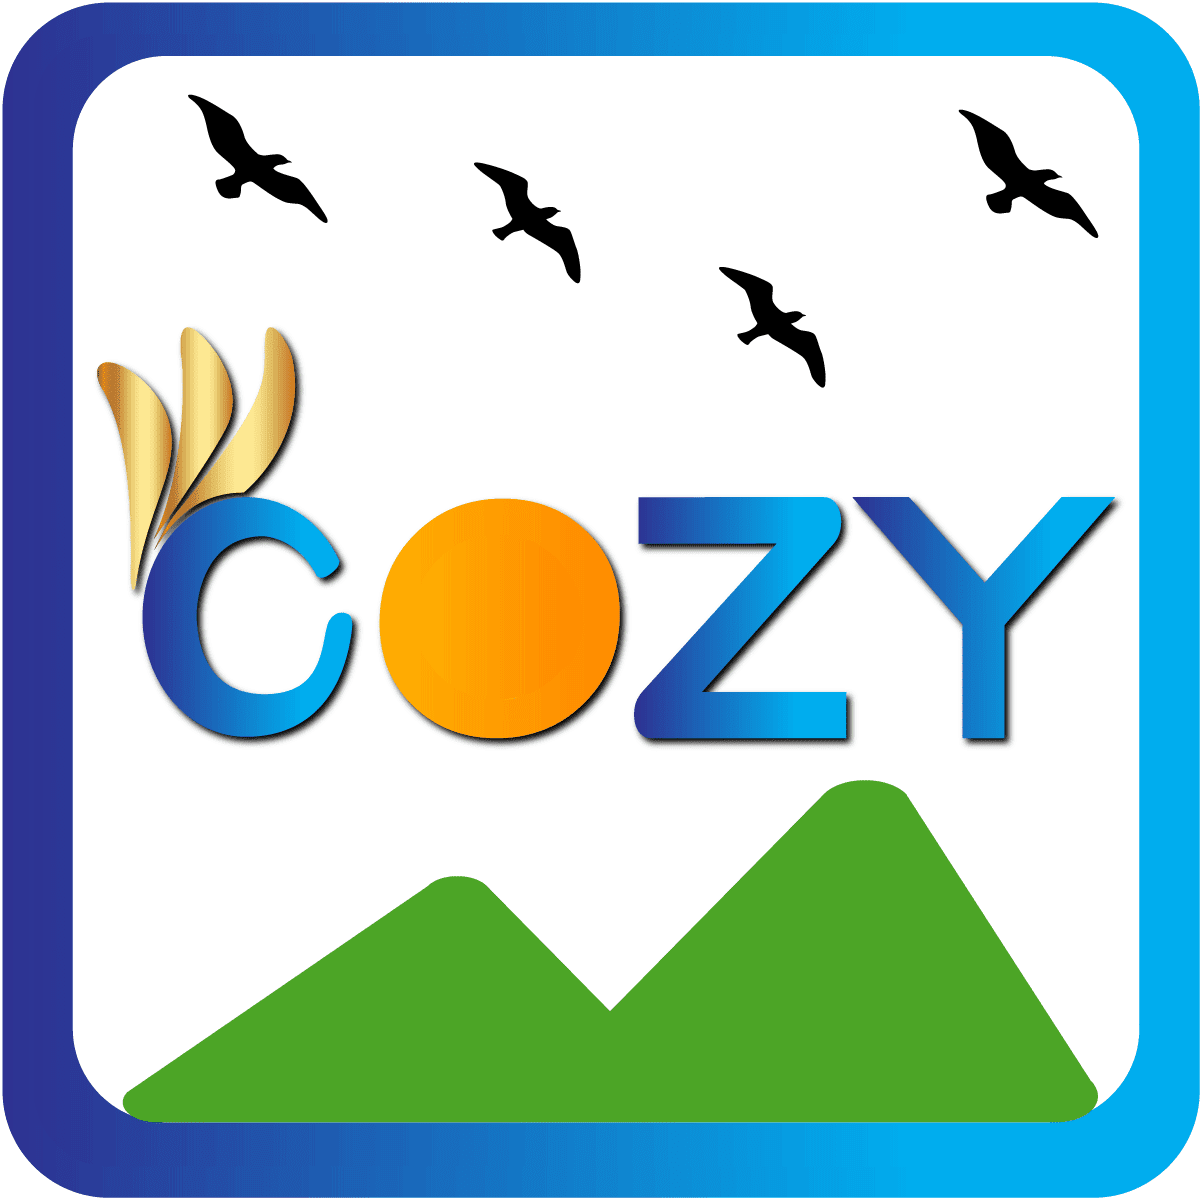 Cozy Image Gallery logo